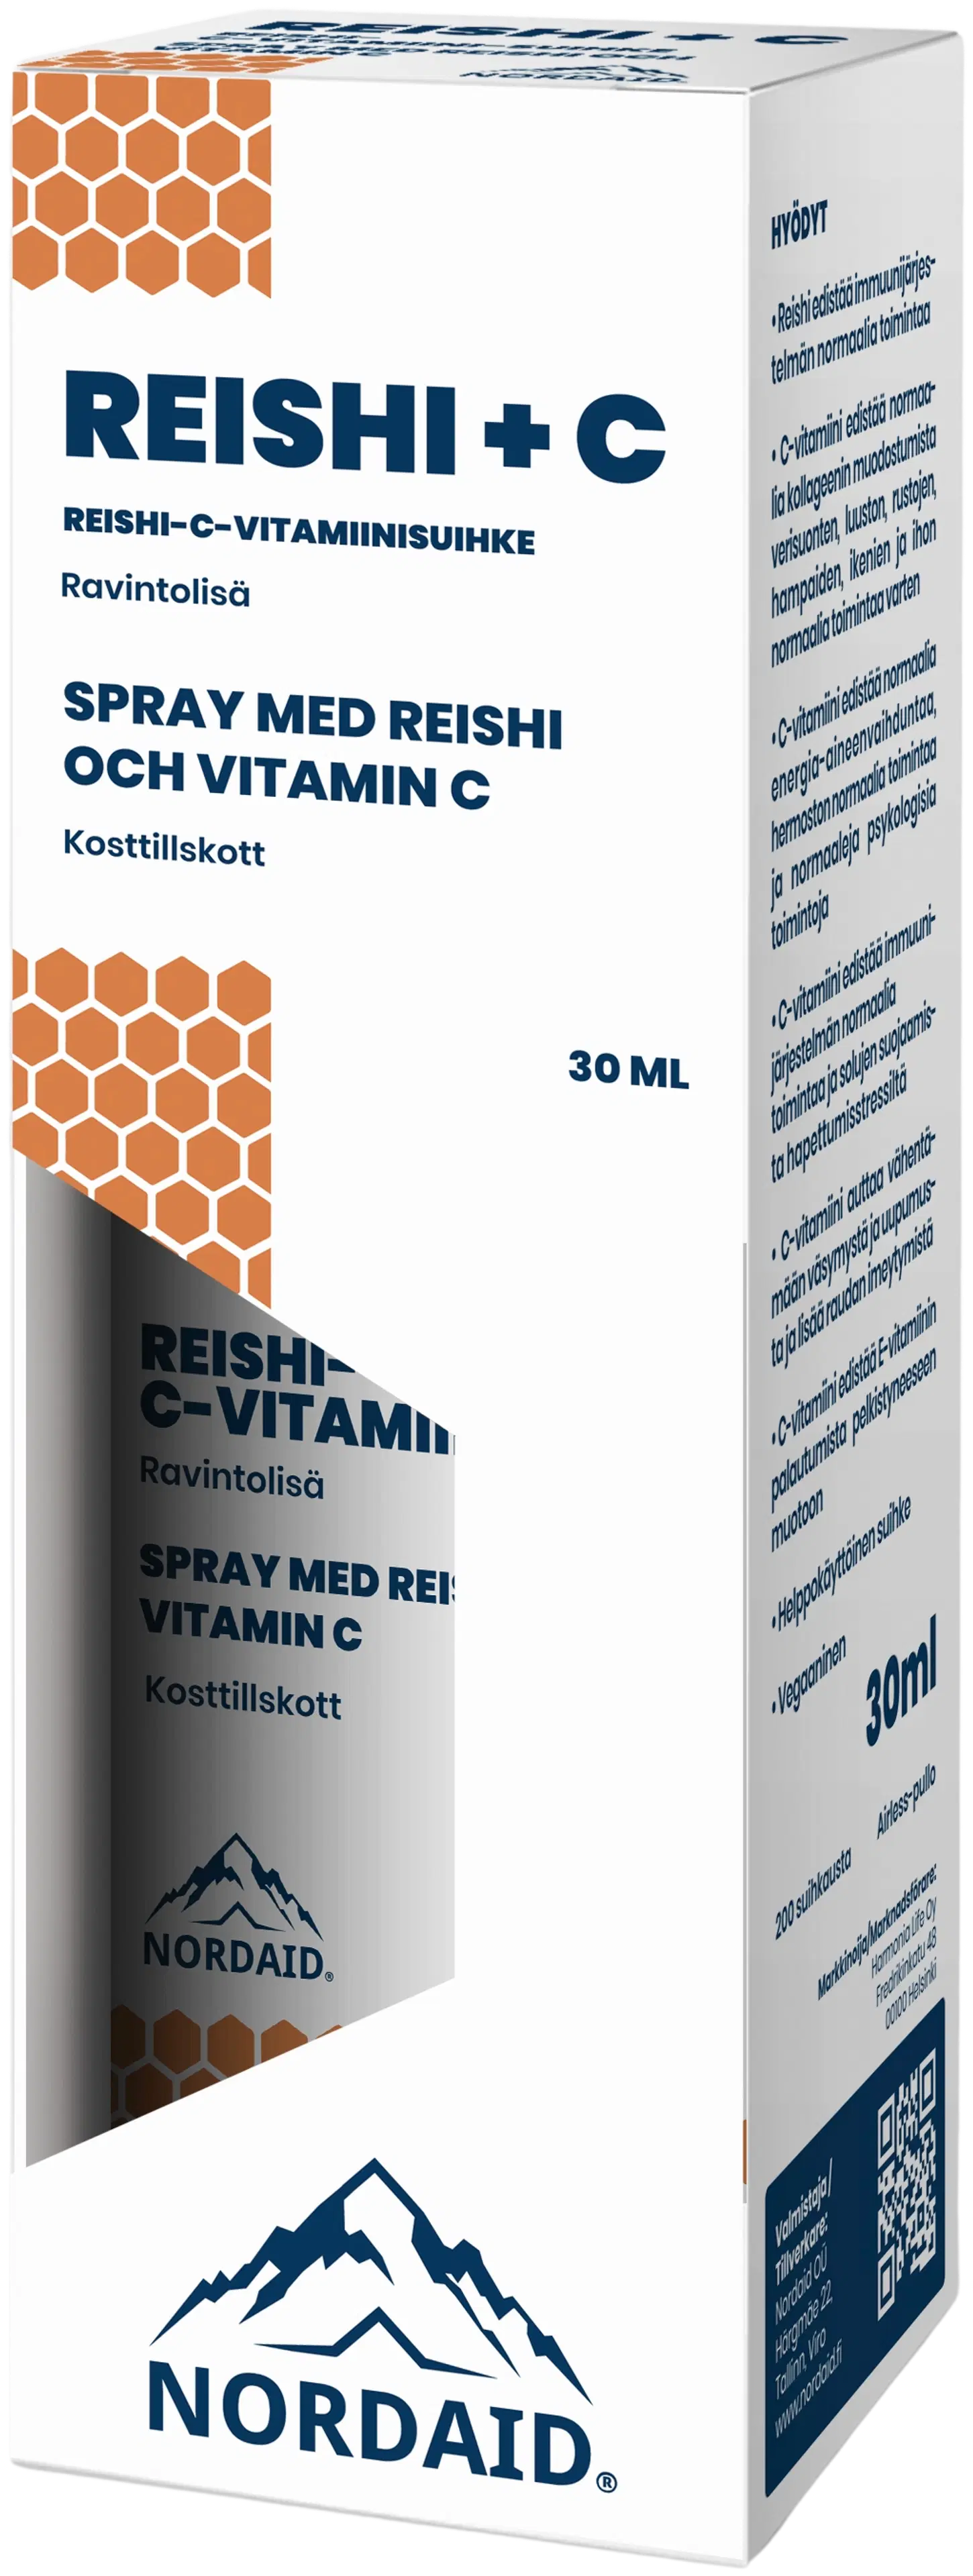 Nordaid Reishi+C-vitamiinisuihke 30 ml